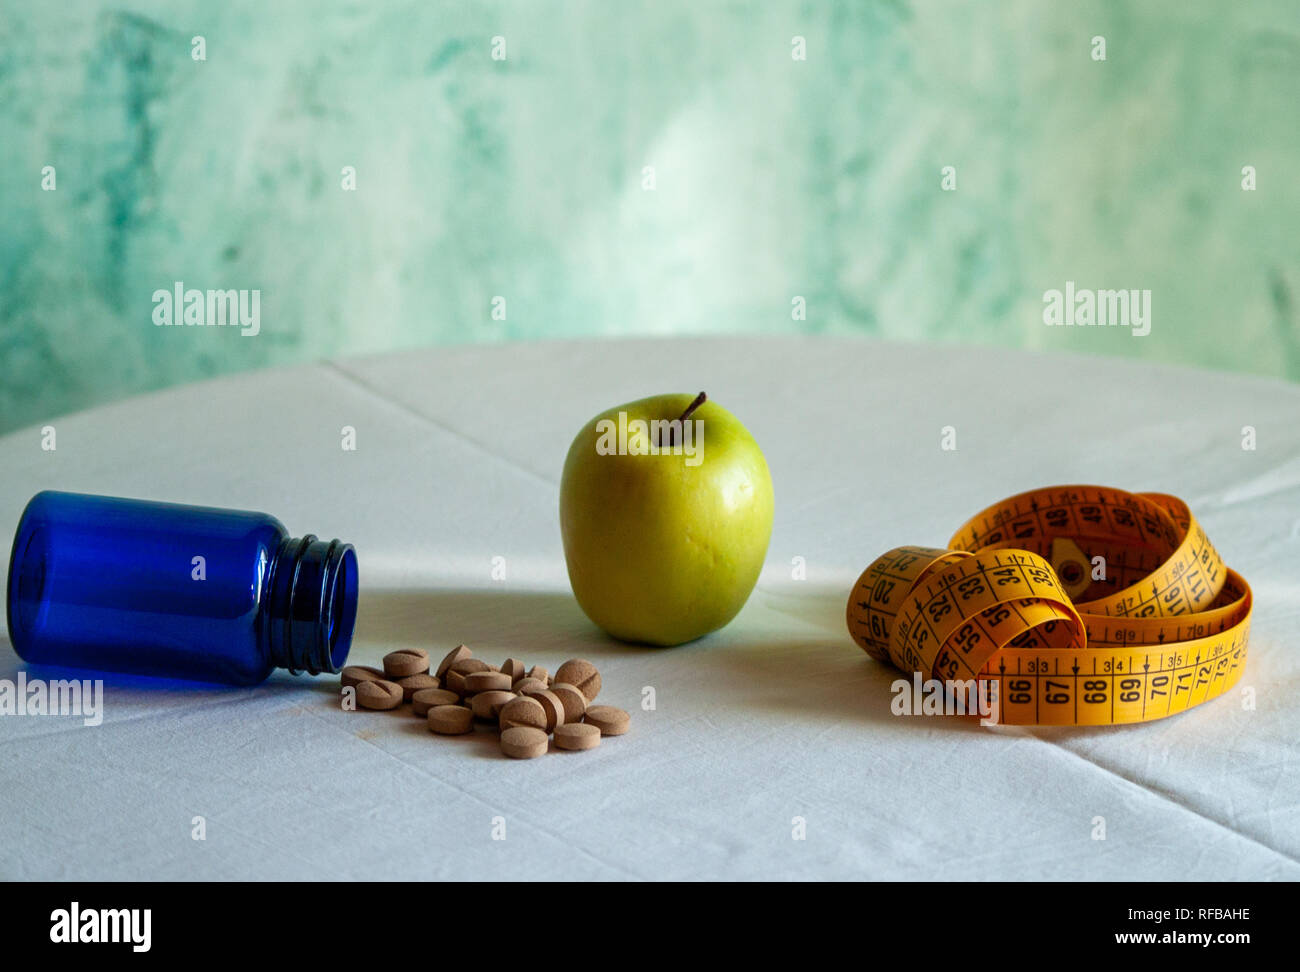 Ein Apfel, ein Maßband und einem blauen Container mit pflanzenfasern Pillen auf einem Tisch Stockfoto